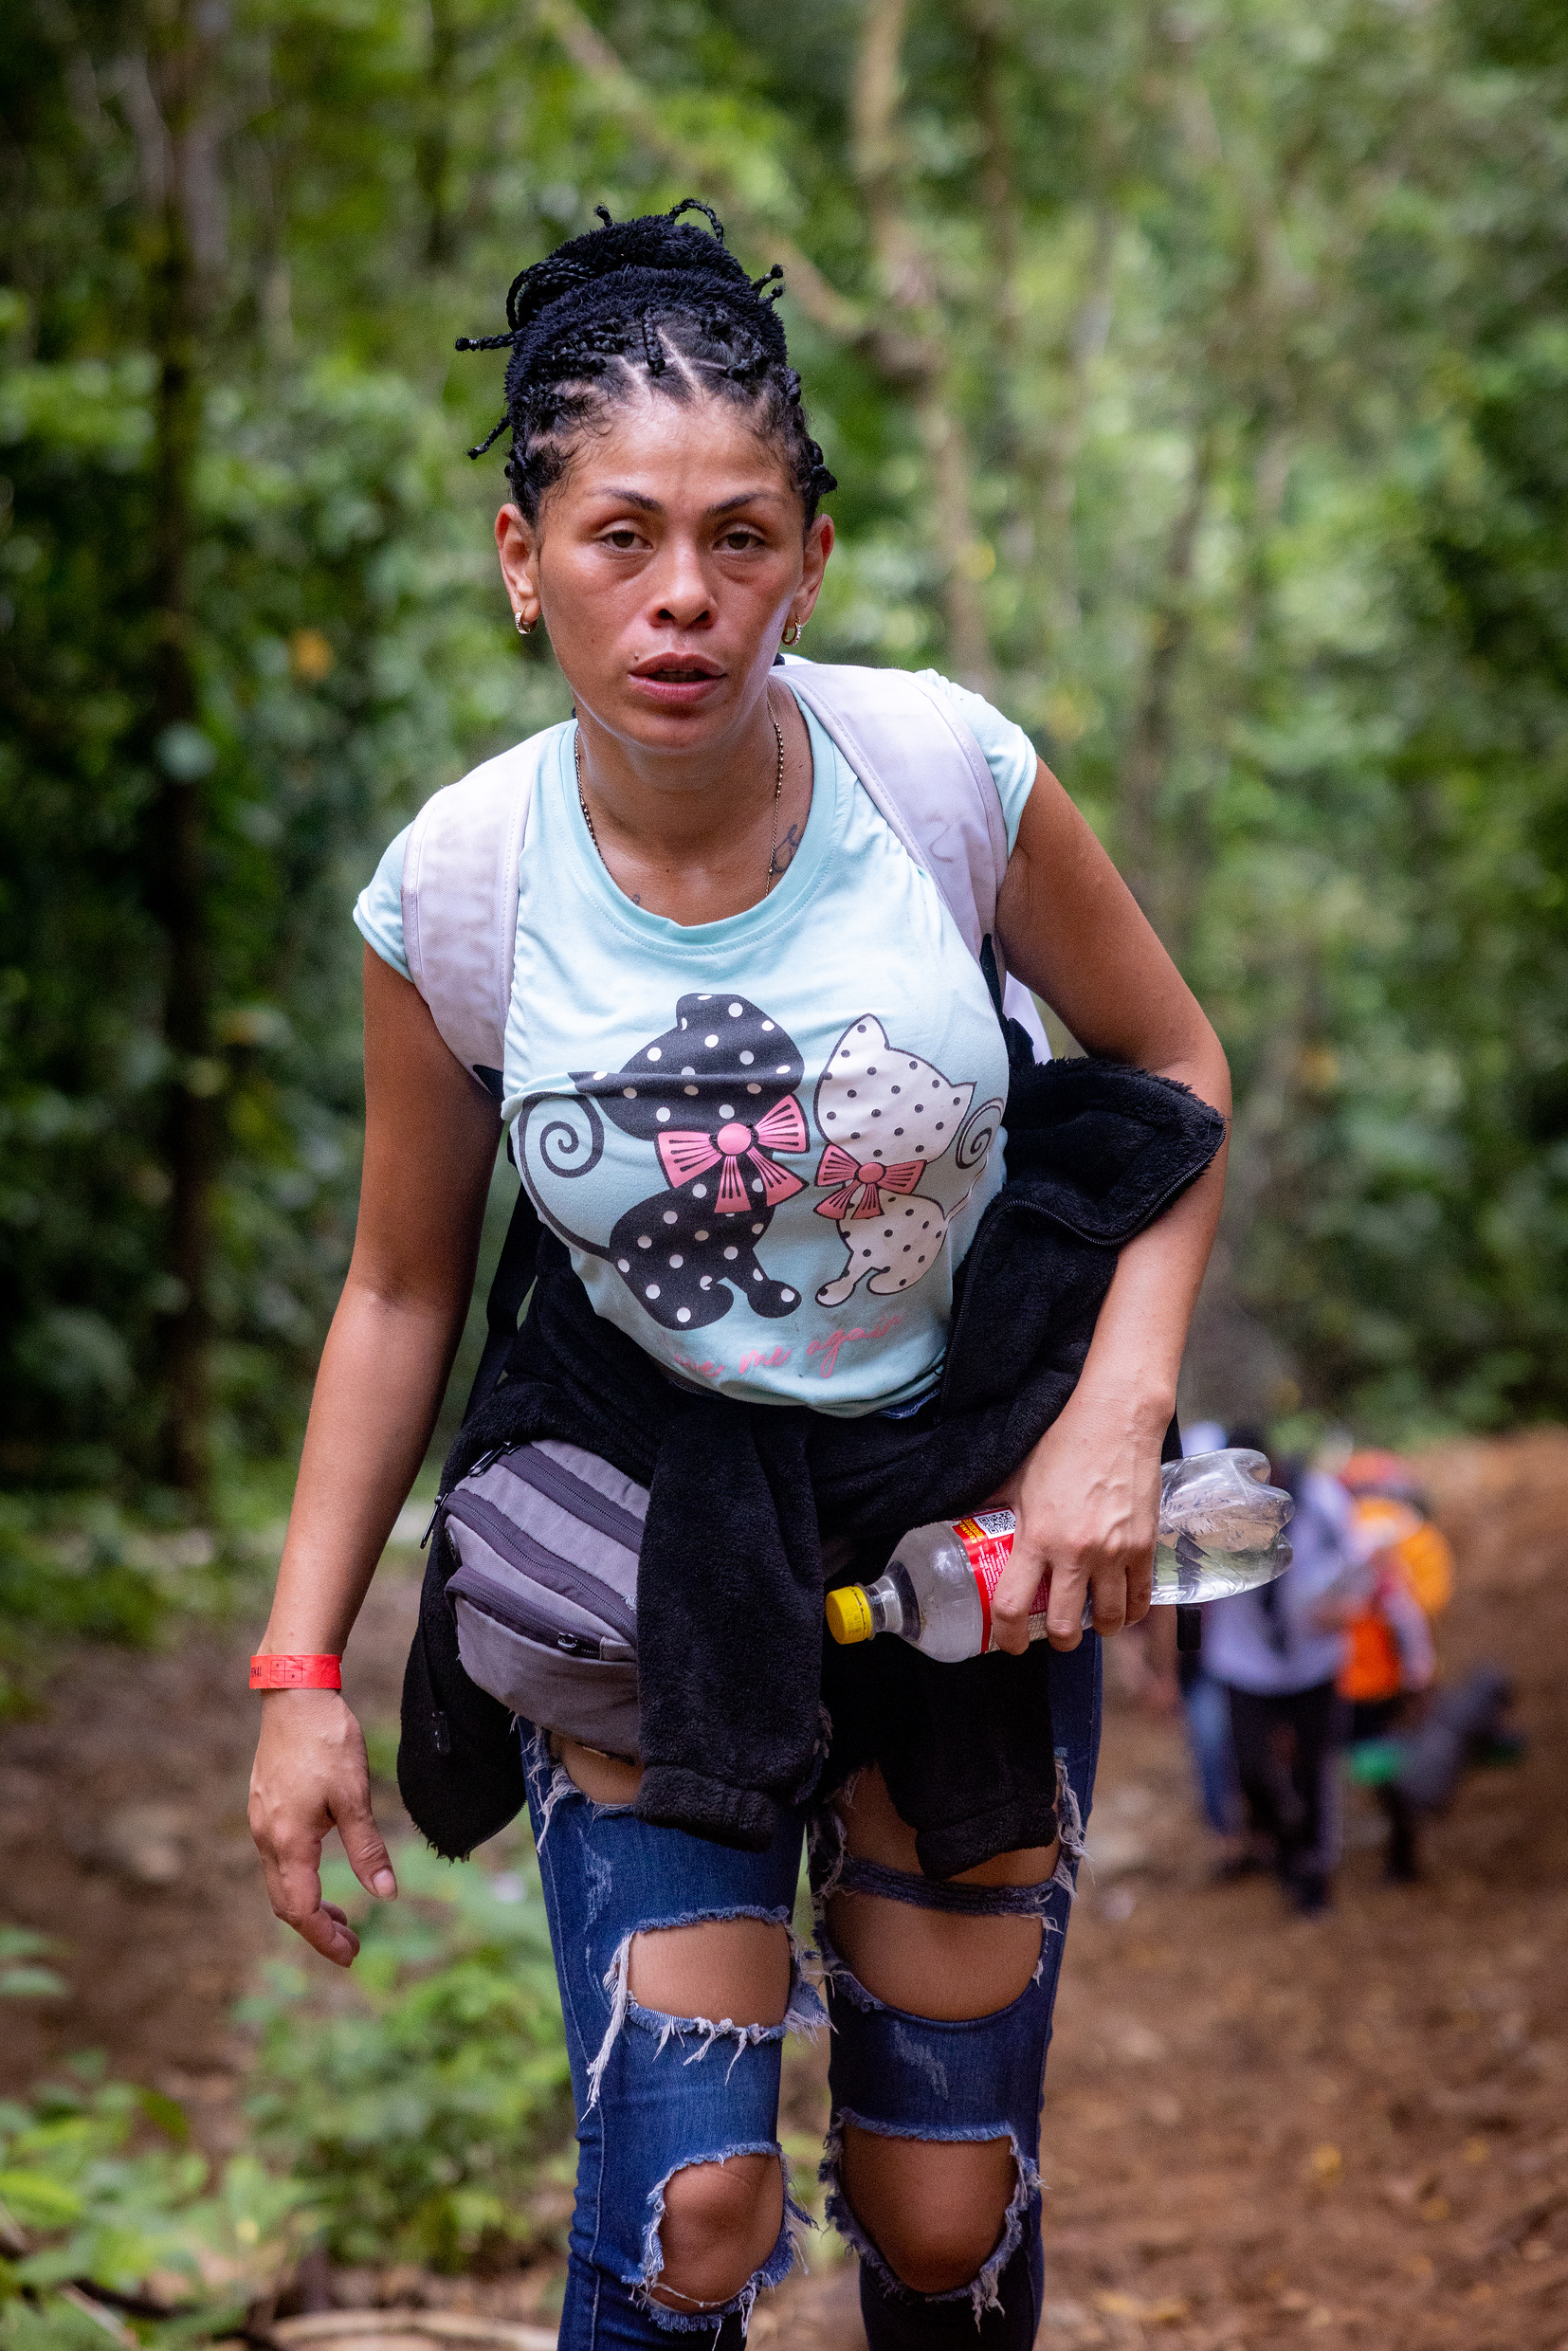 Frauen, Männer, ganze Familien machen sich auf den strapazenreichen Weg durch den Darièn-Dschungel.Foto: © Jonas Brander / Adveniat